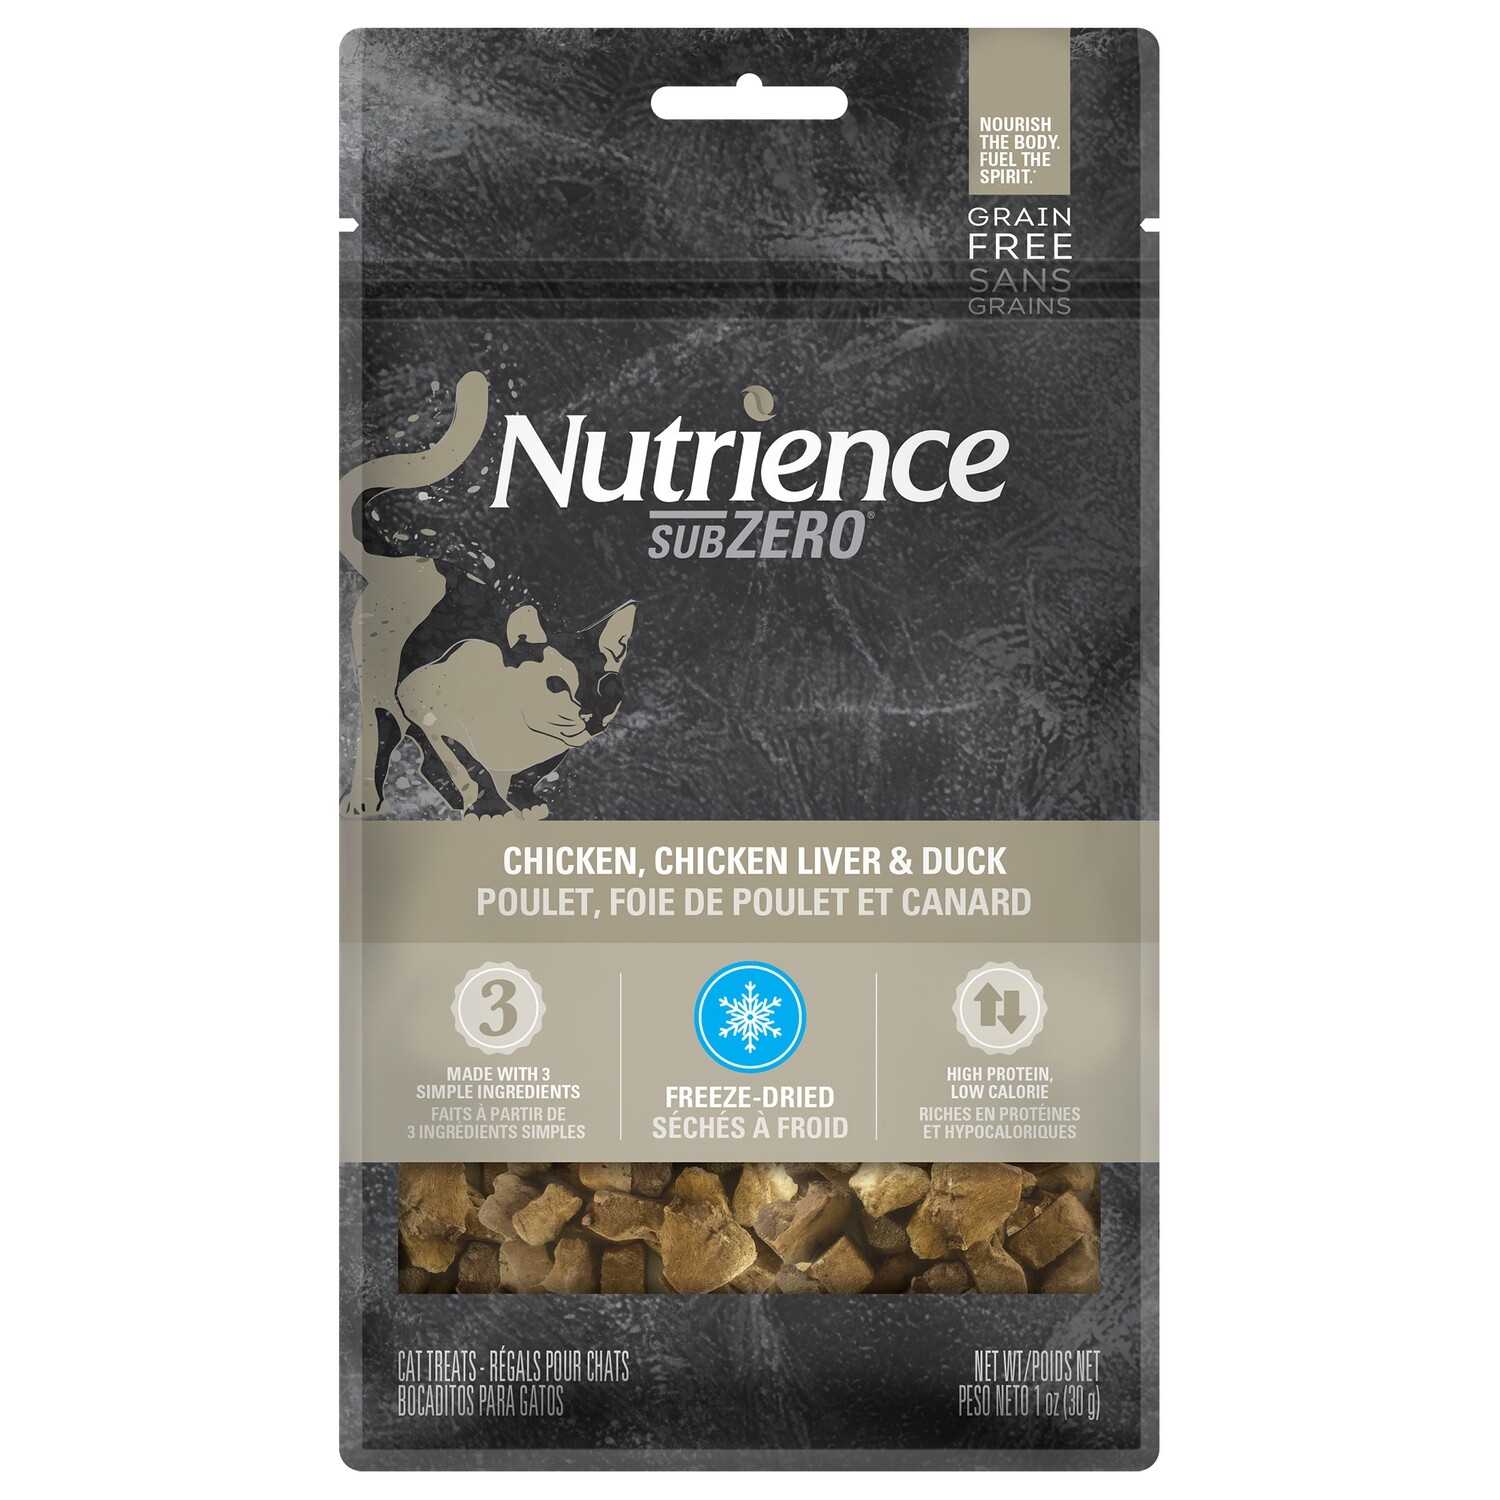 Nutrience Grain Free Subzero Fraser Valley Treats - Chicken, Chicken Liver & Duck Liver - 30 g (1 oz)